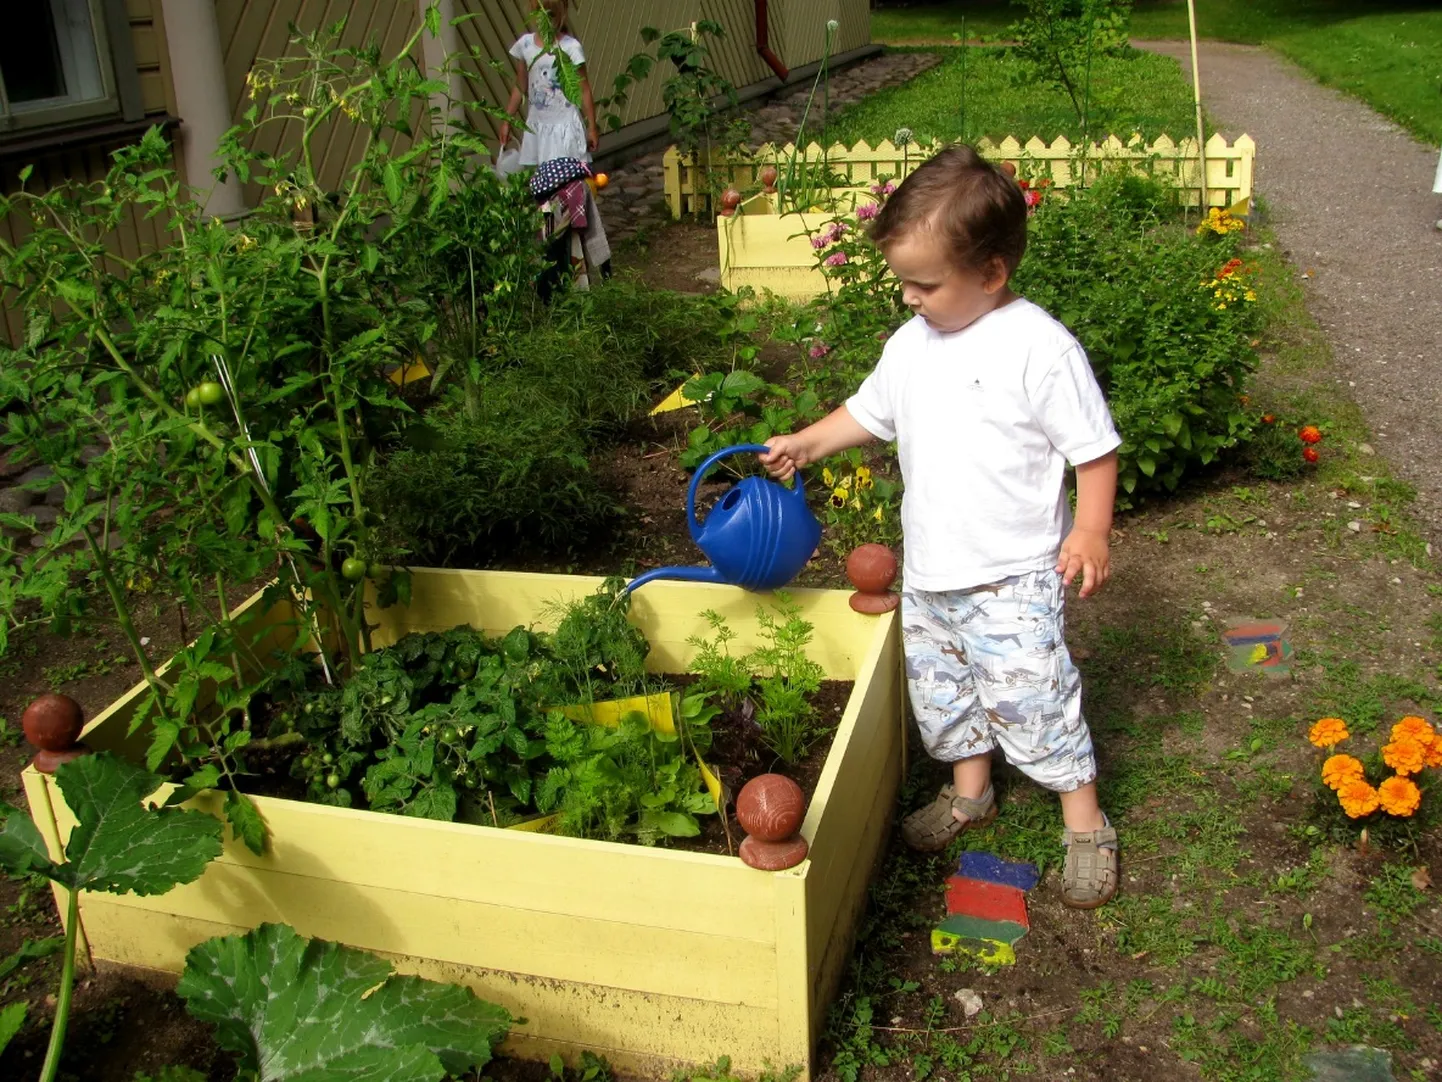 Miiamilla miniaias on avatud keskkonnahariduslik välinäitus «Roheliste näppudega lapsed».